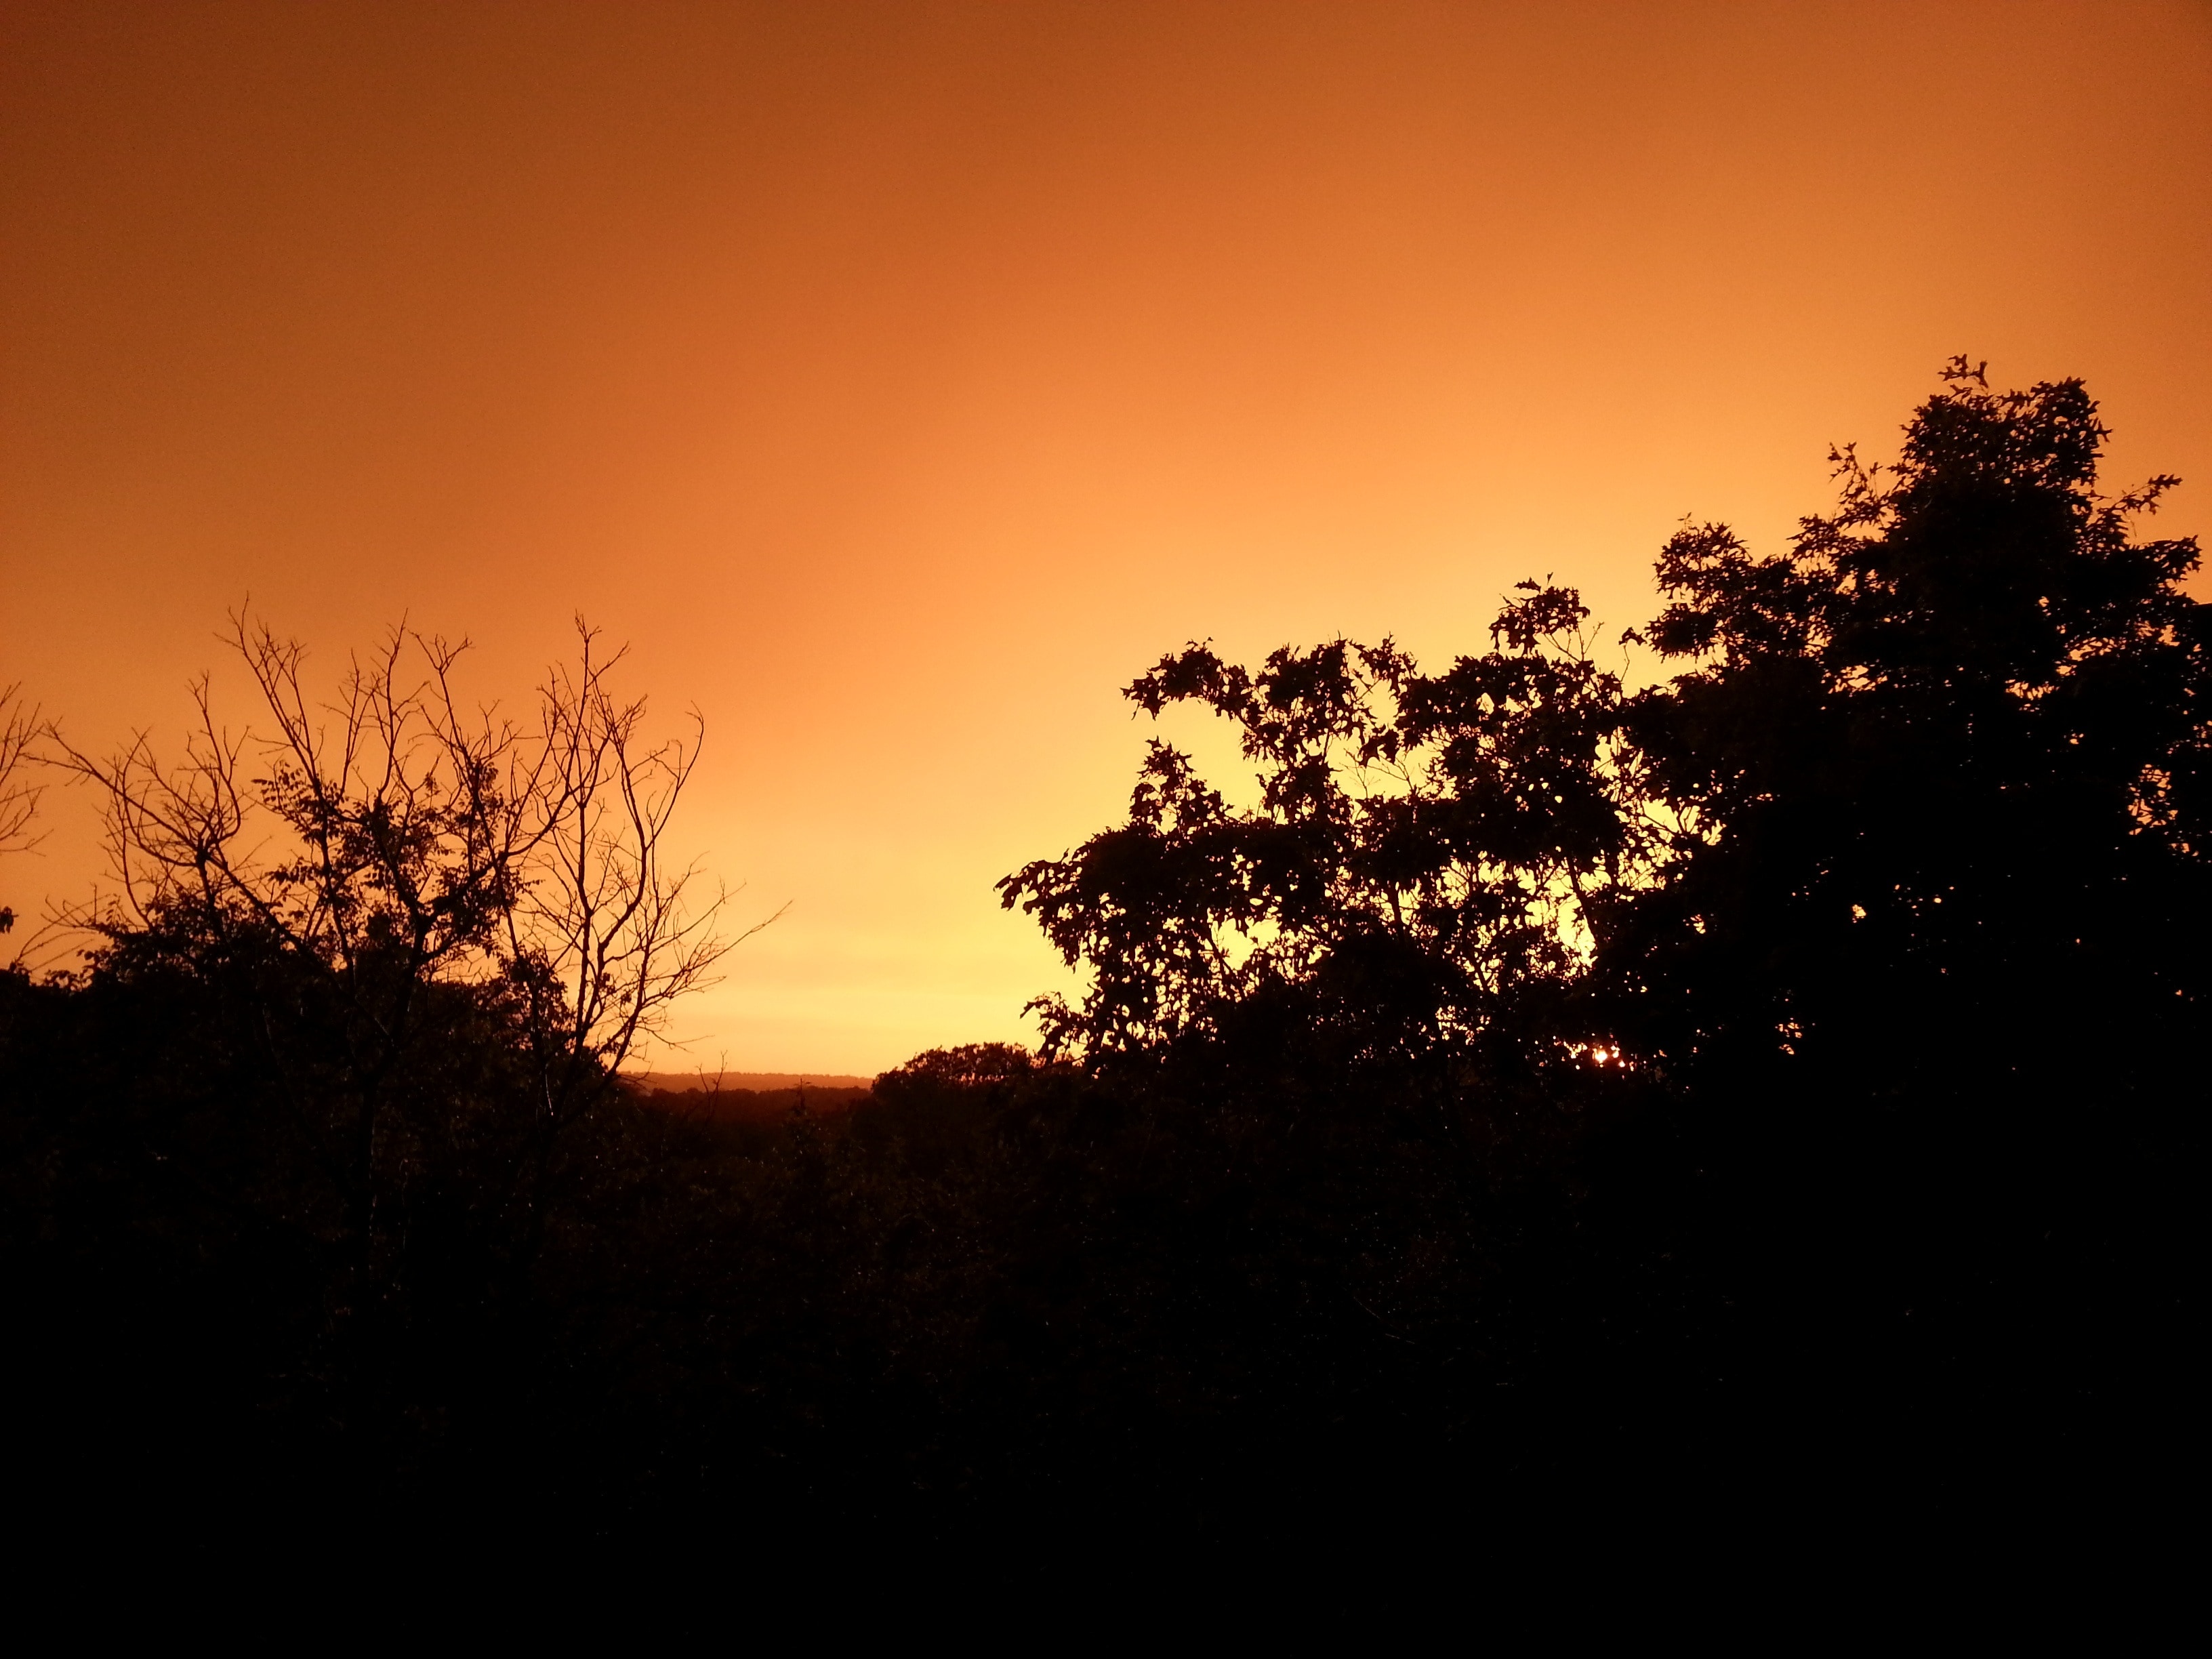 sunset landscape photograph